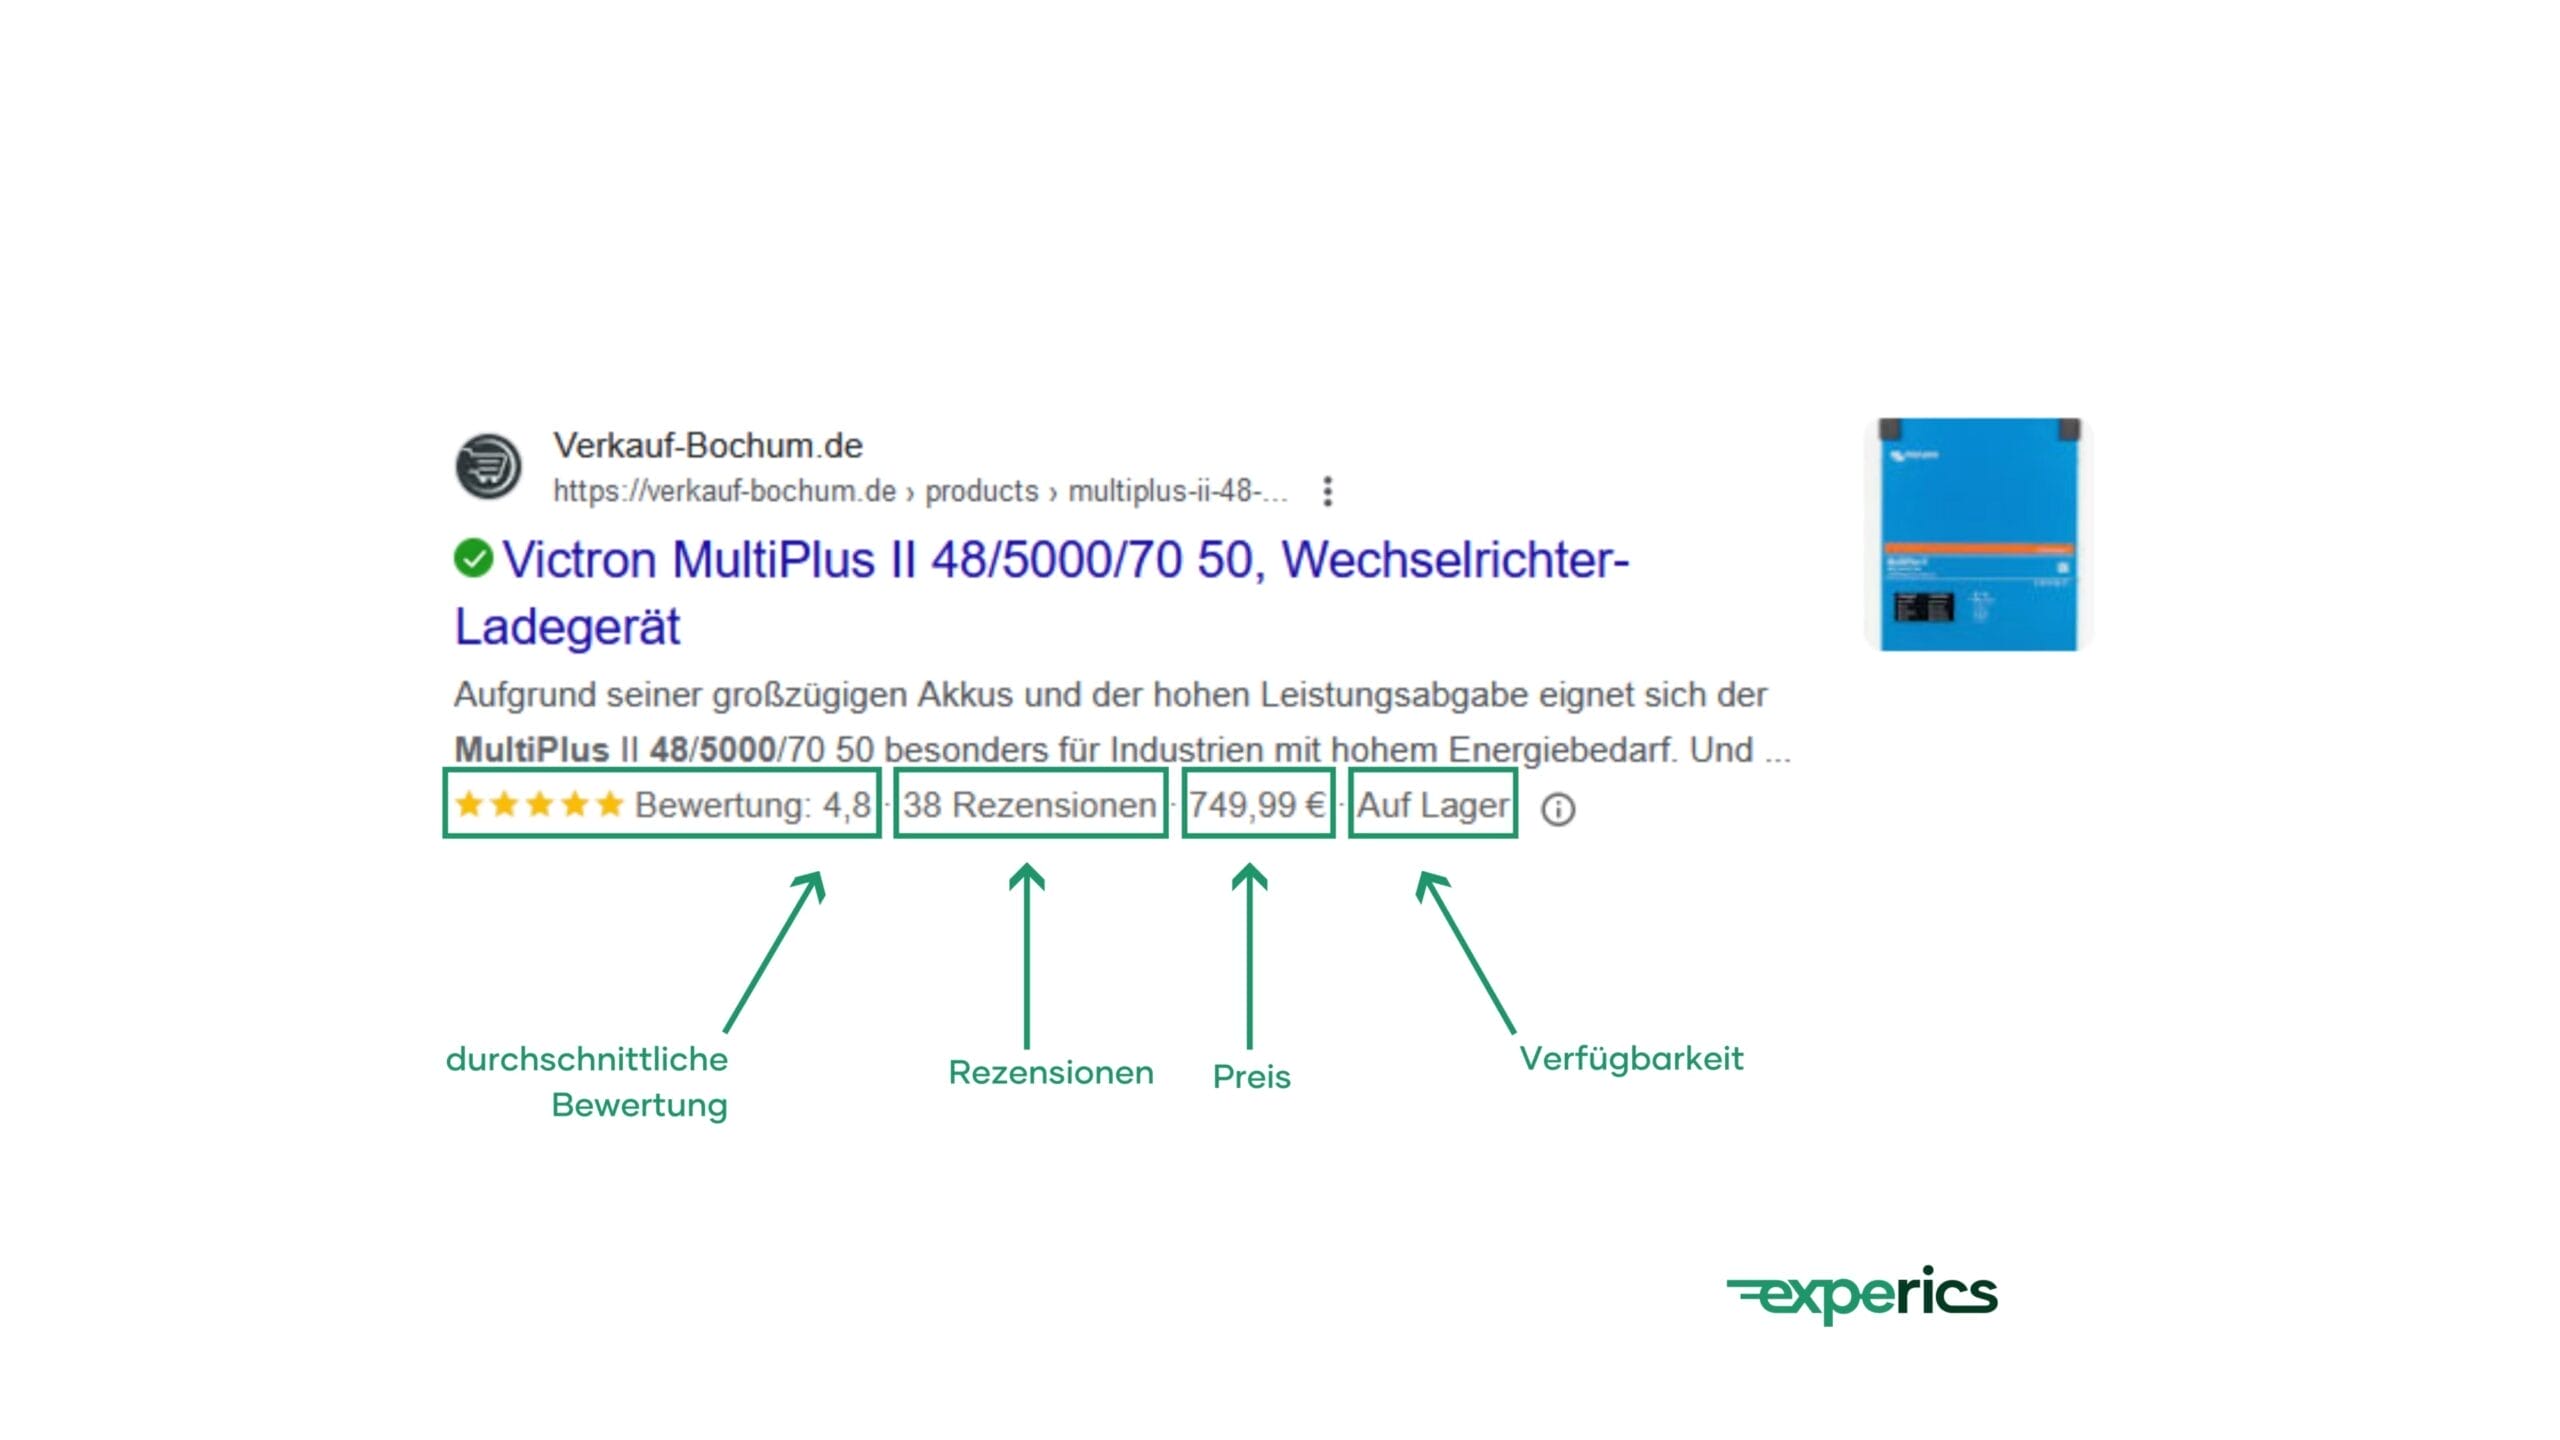 Das Produkt-Snippet Von “Verkauf-Bochum” Enthält Folgende Kaufrelevante Informationen: Durchschnittliche Bewertung, Rezensionen, Preis Und Verfügbarkeit.